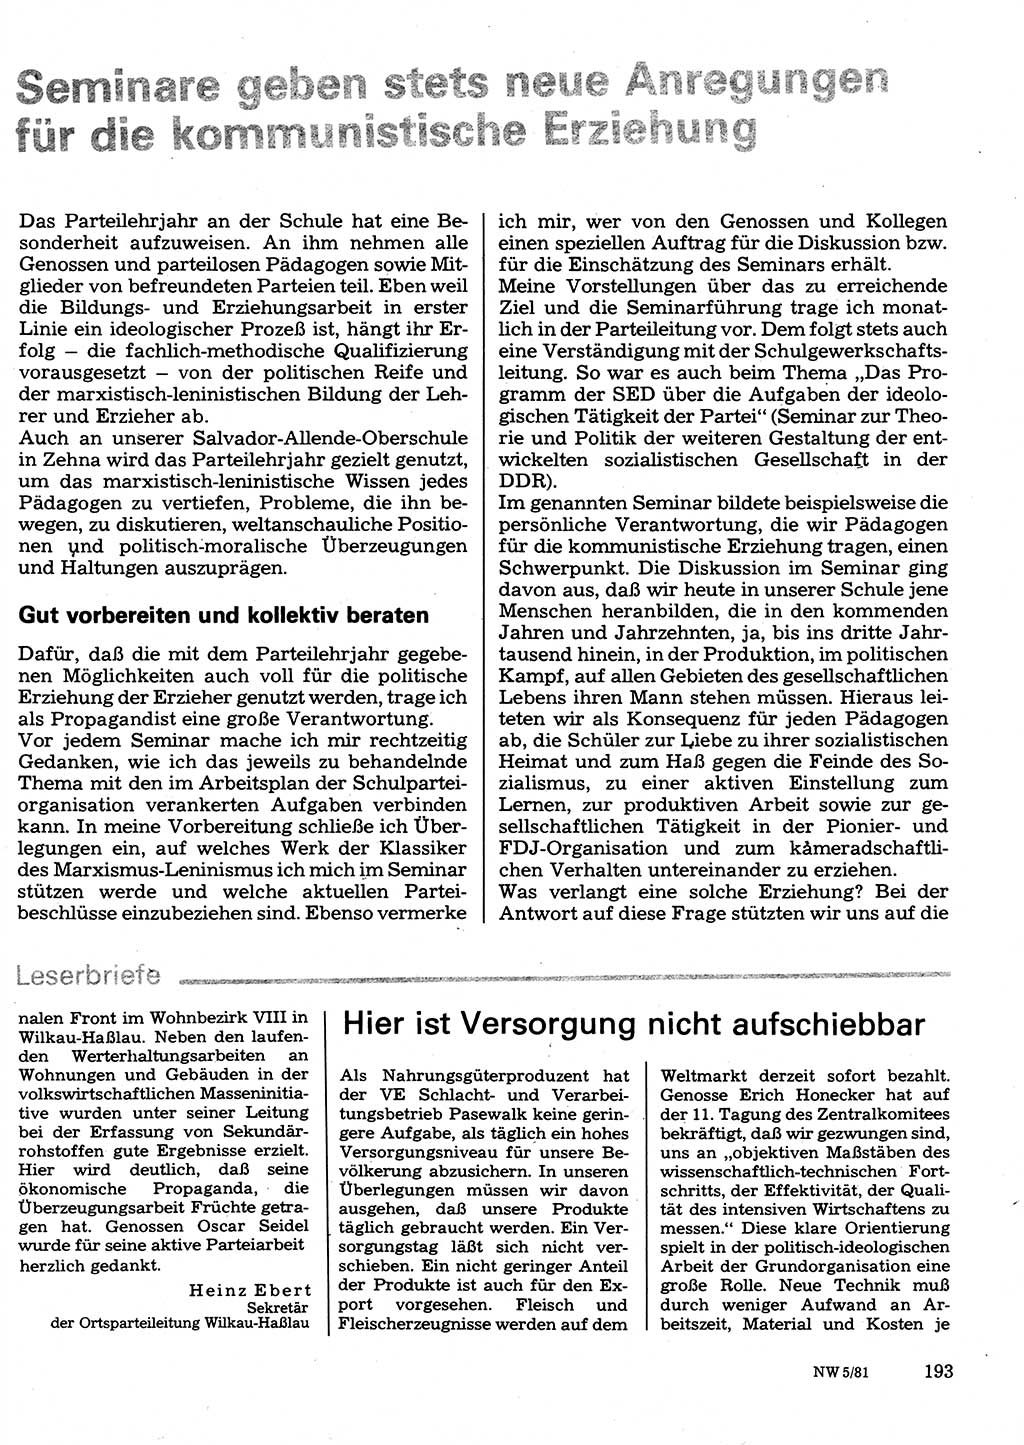 Neuer Weg (NW), Organ des Zentralkomitees (ZK) der SED (Sozialistische Einheitspartei Deutschlands) für Fragen des Parteilebens, 36. Jahrgang [Deutsche Demokratische Republik (DDR)] 1981, Seite 193 (NW ZK SED DDR 1981, S. 193)